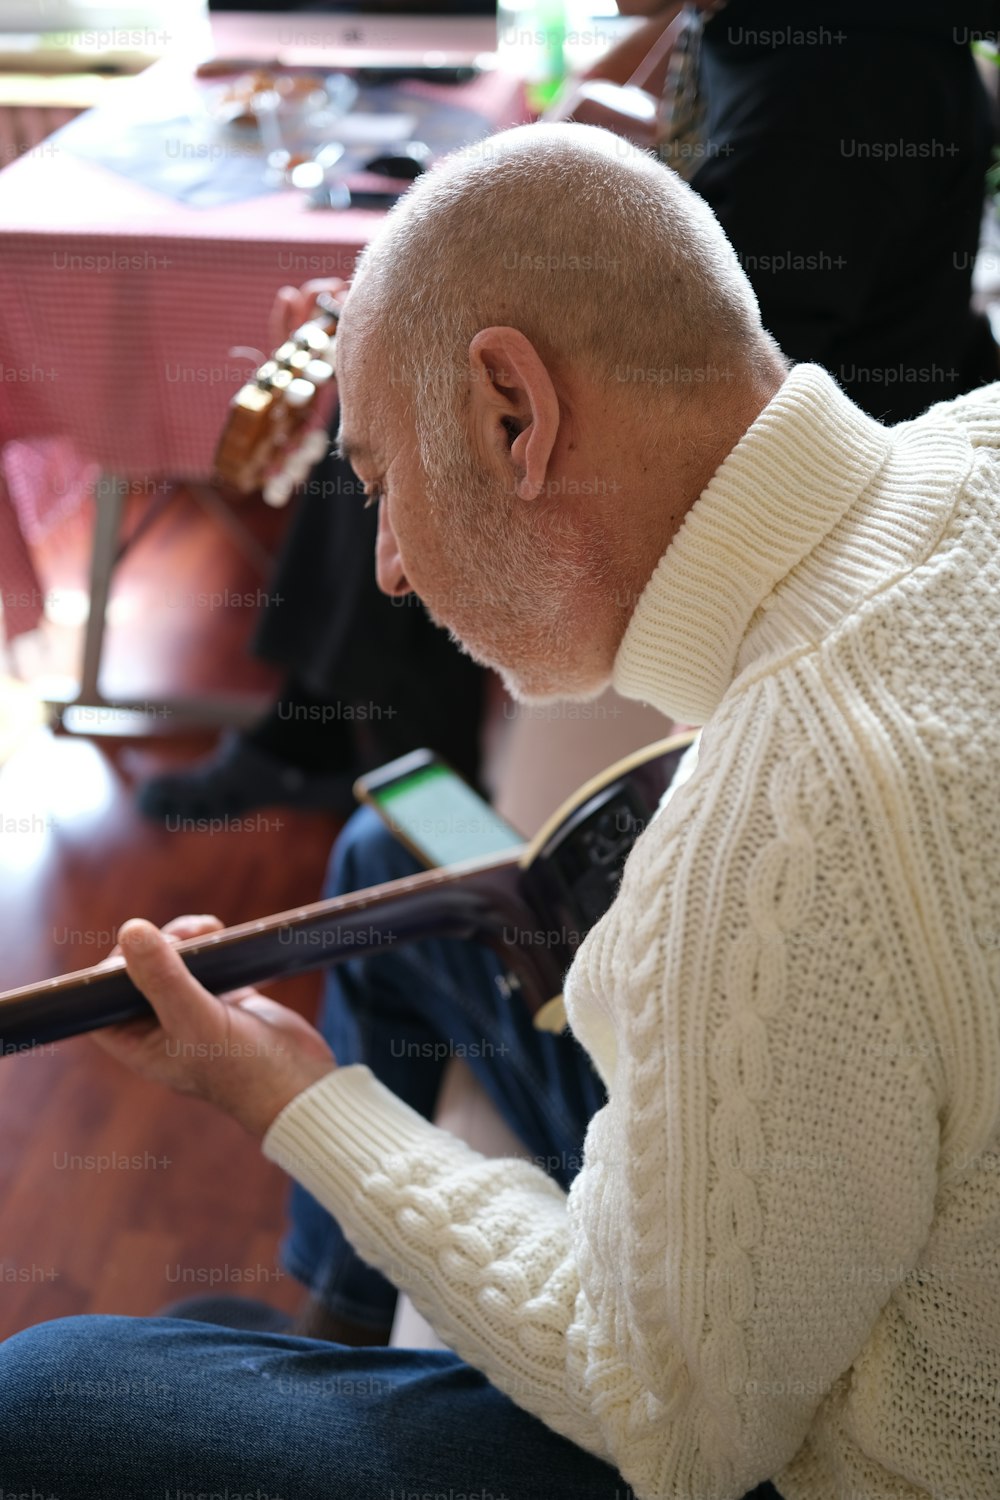 Un hombre sentado en el suelo tocando un instrumento musical